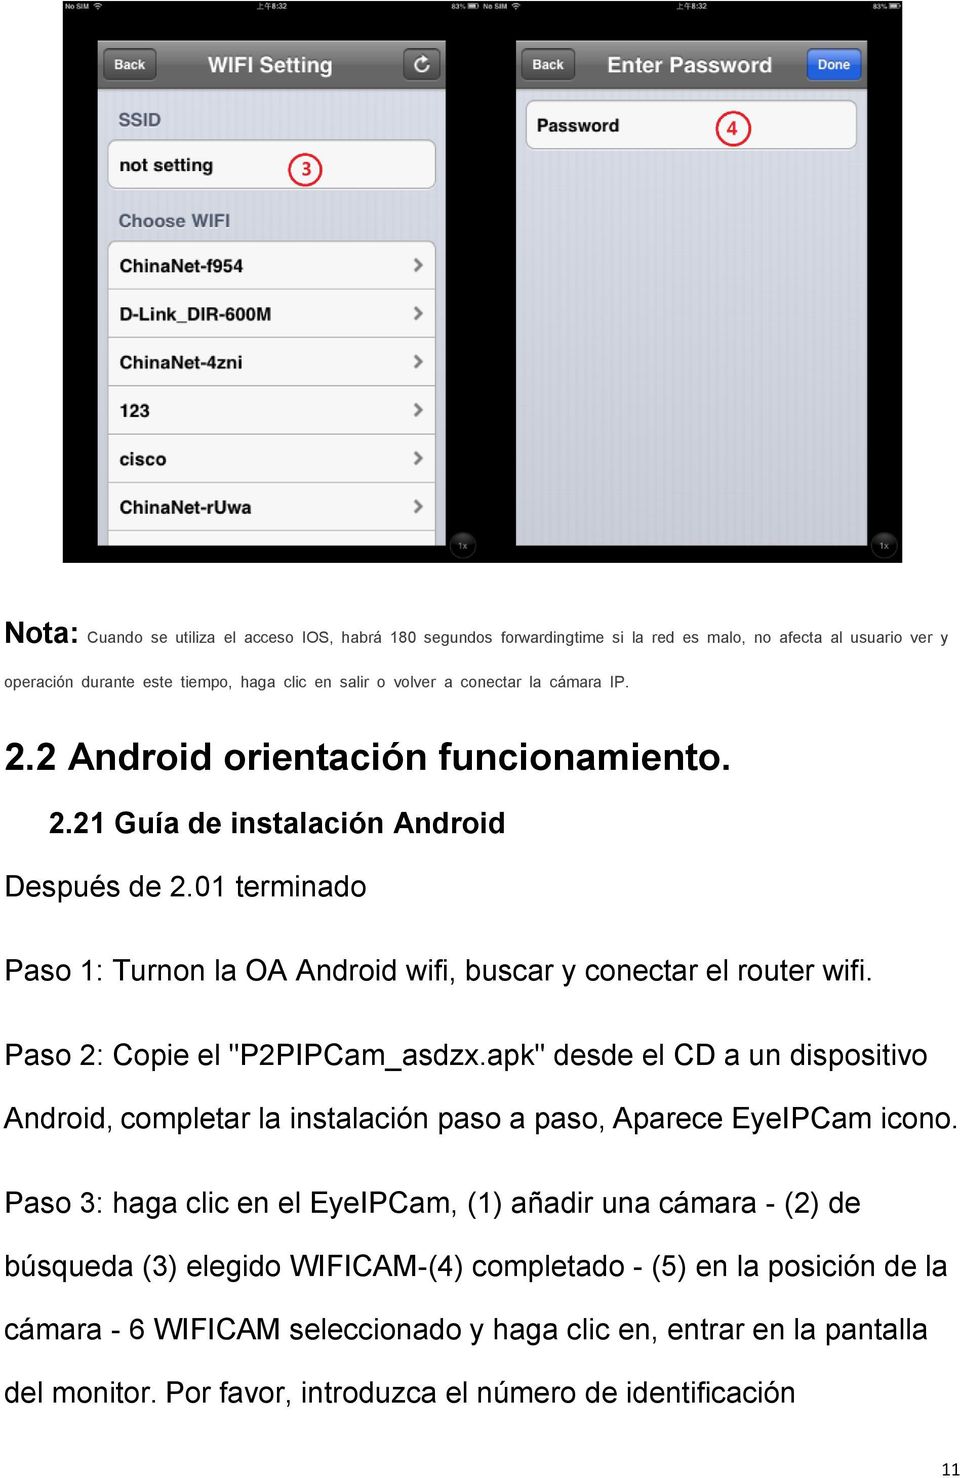 Paso 2: Copie el "P2PIPCam_asdzx.apk" desde el CD a un dispositivo Android, completar la instalación paso a paso, Aparece EyeIPCam icono.